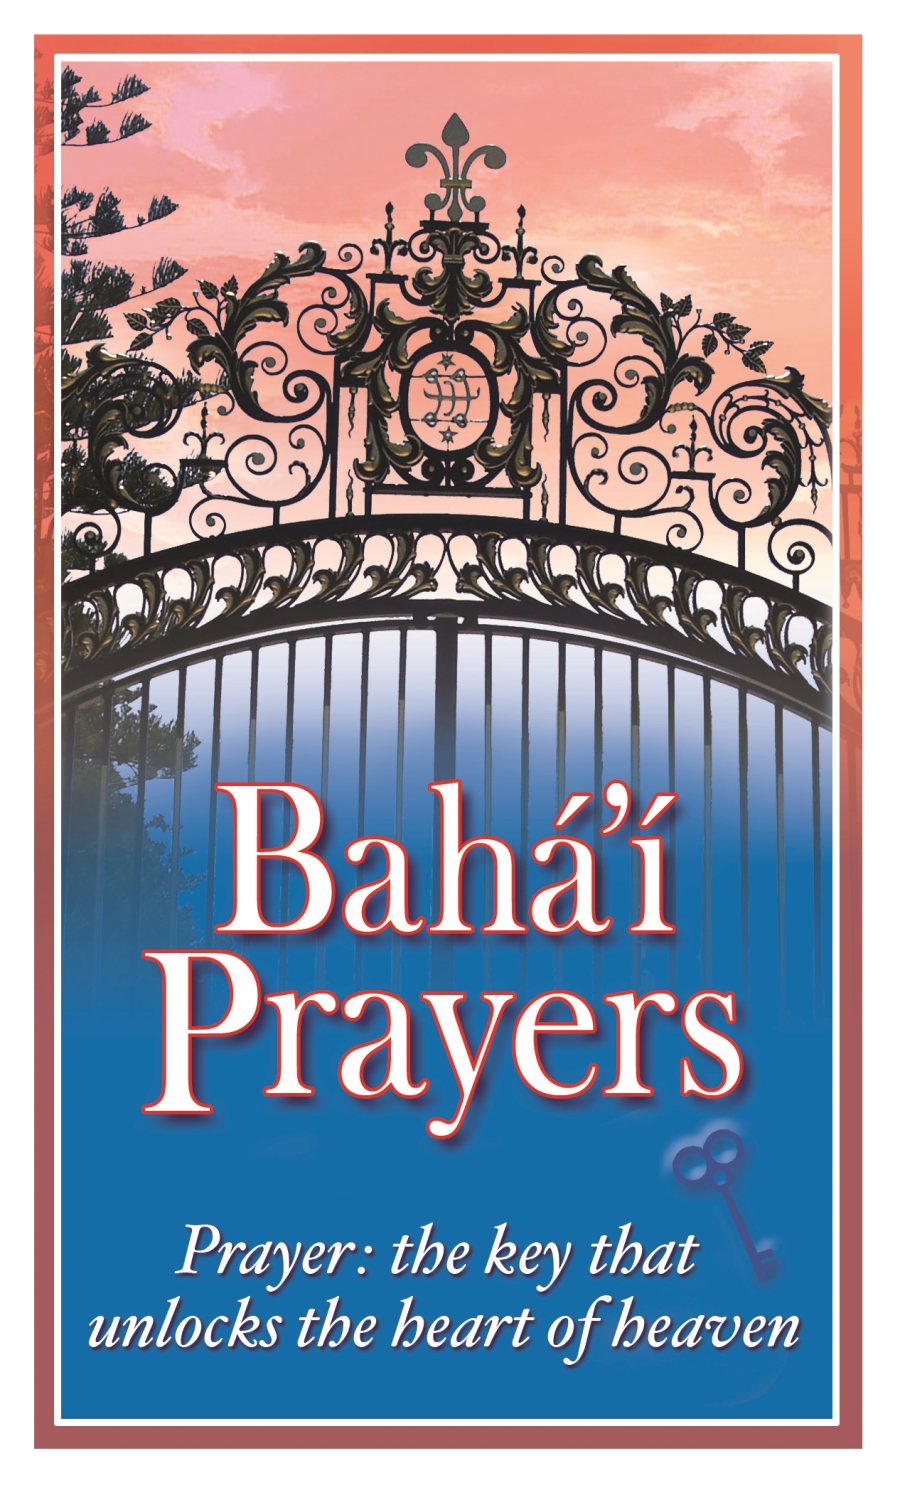 baha'i travel prayer